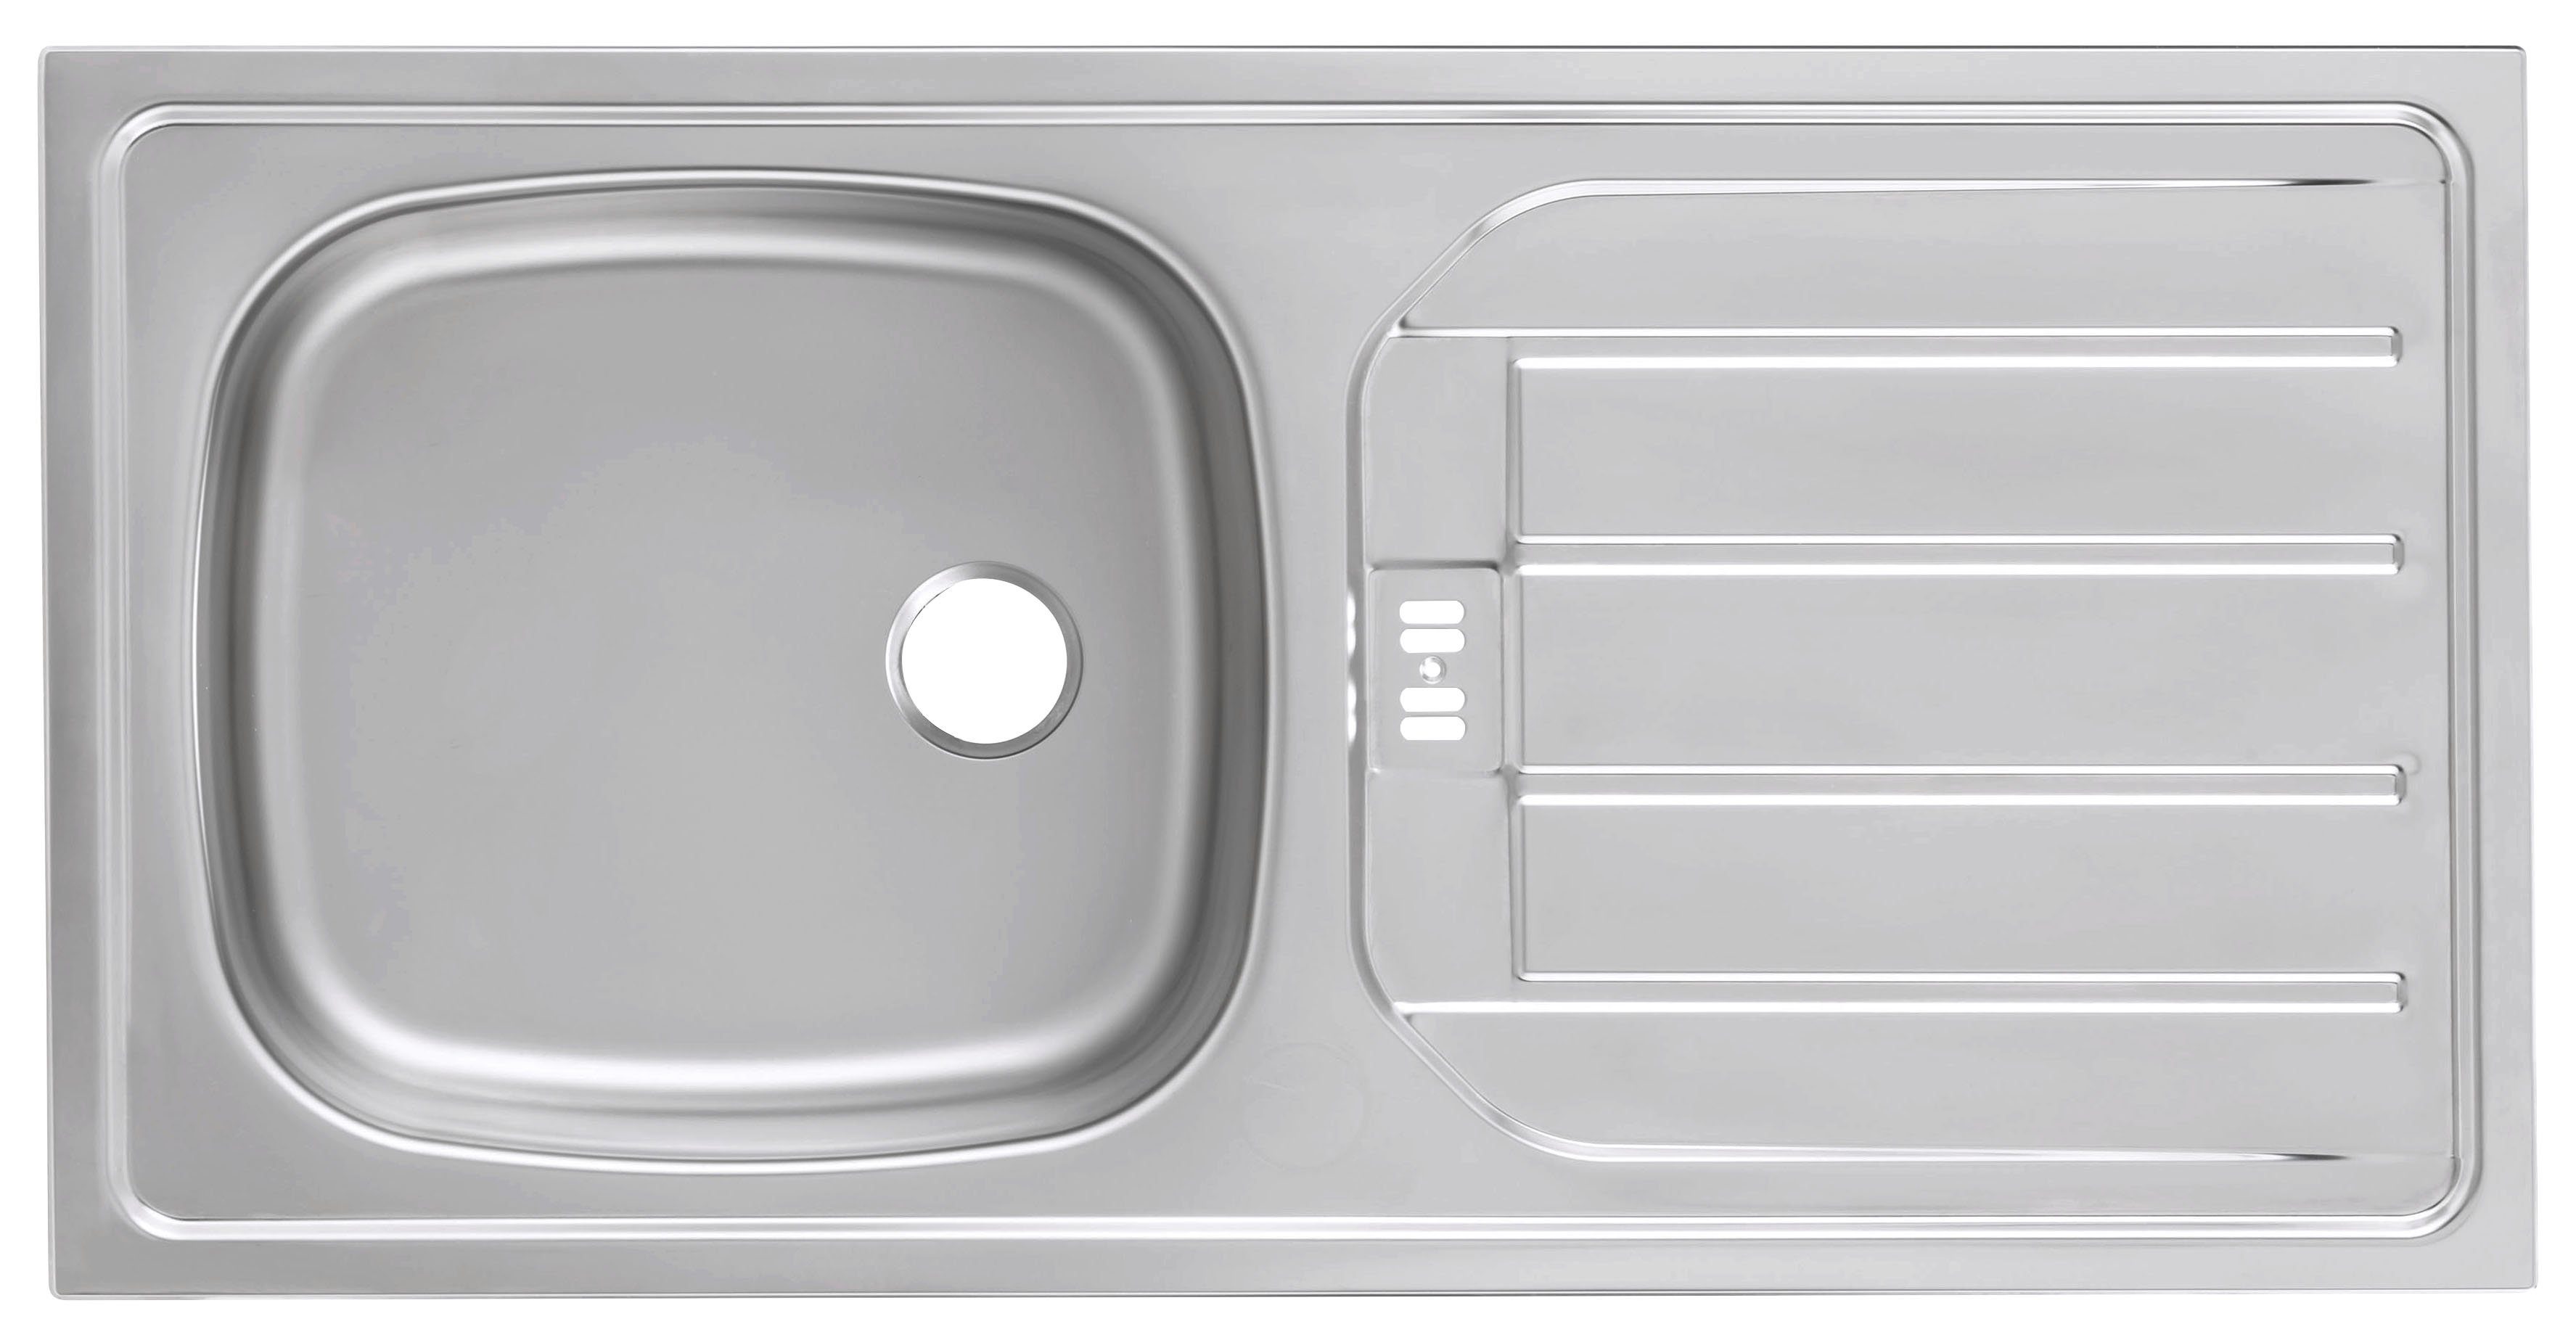 HELD MÖBEL Küchenzeile Brindisi, mit Hochglanz/weiß Breite | weiß cm 210 E-Geräten, weiß